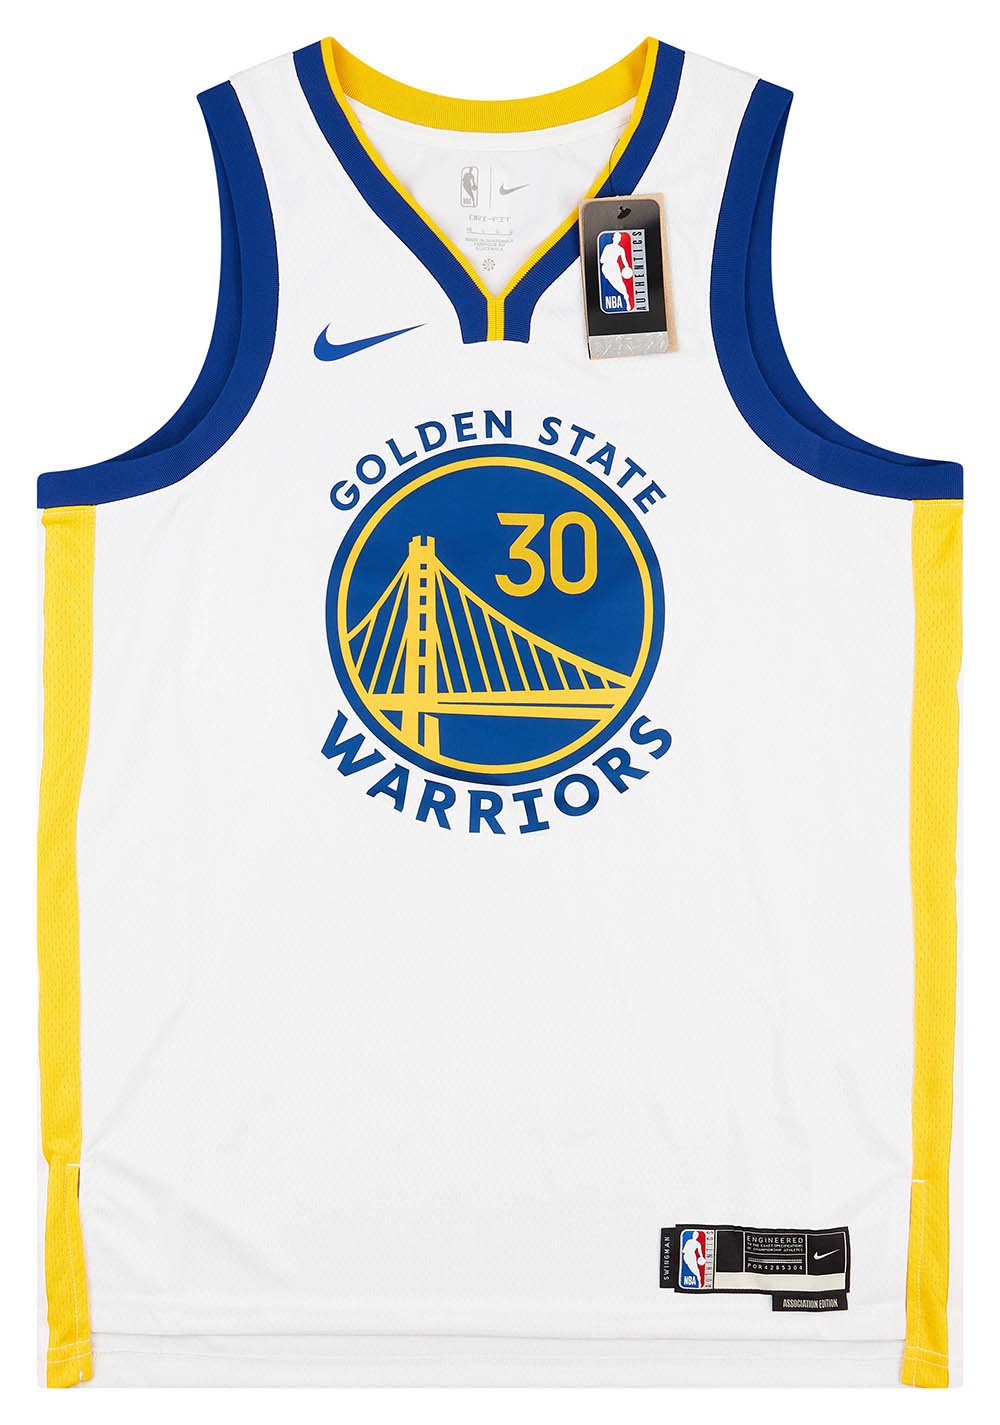 2020 NBA Golden State Warriors Yellow #30 Jersey,Golden State Warriors